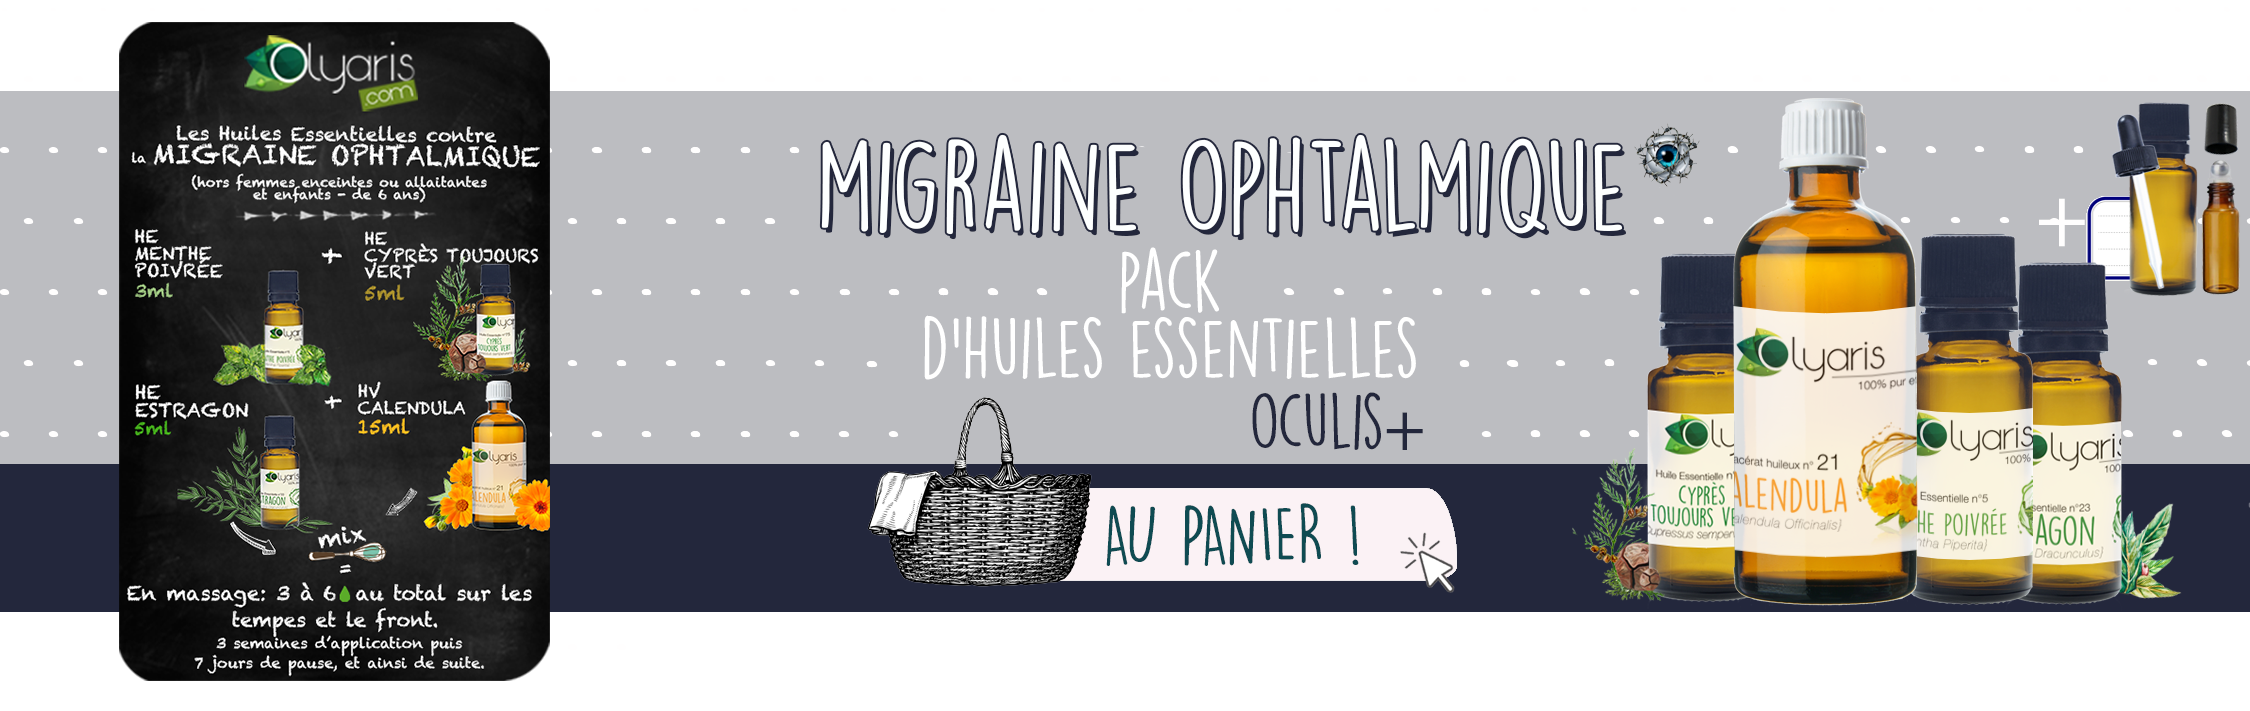 Migraine Ophtalmique et Huiles Essentielles : LE Remède Naturel à Connaître par Olyaris